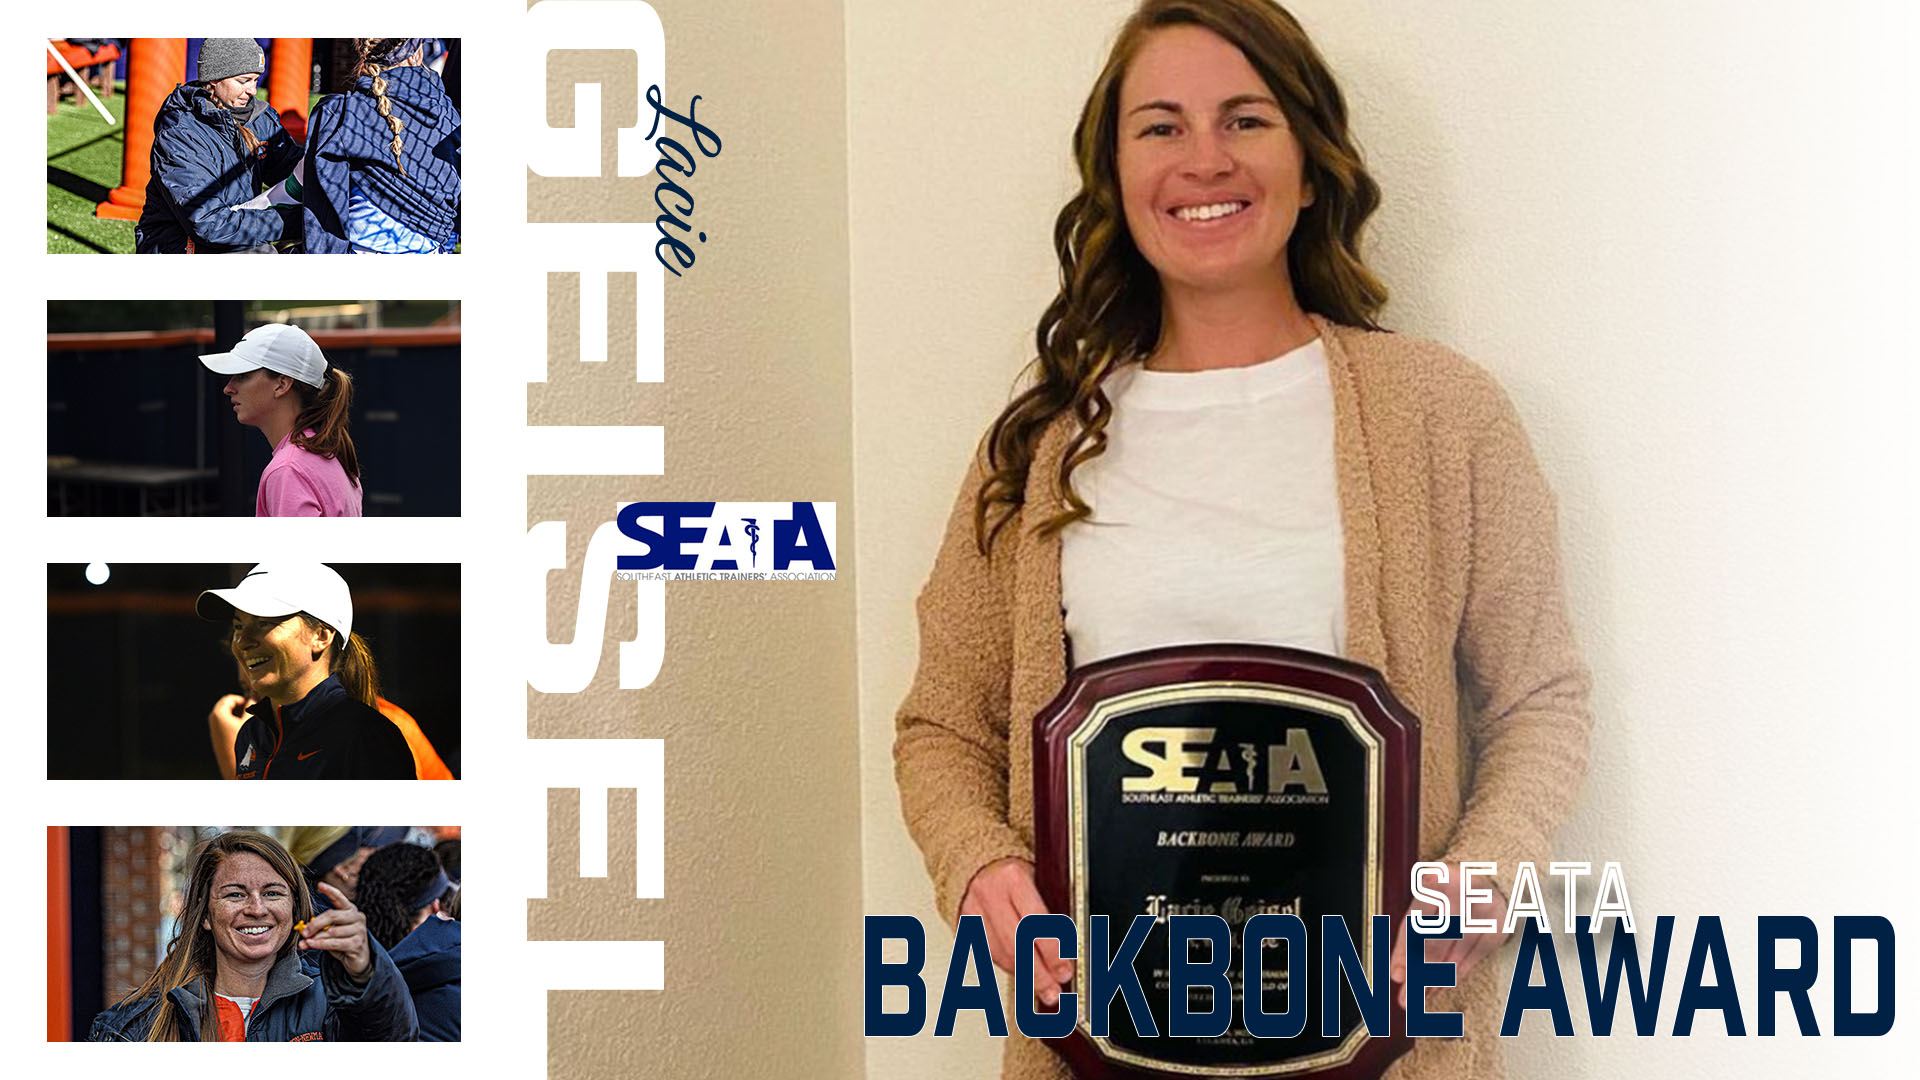 Geisel named SEATA Backbone Award winner